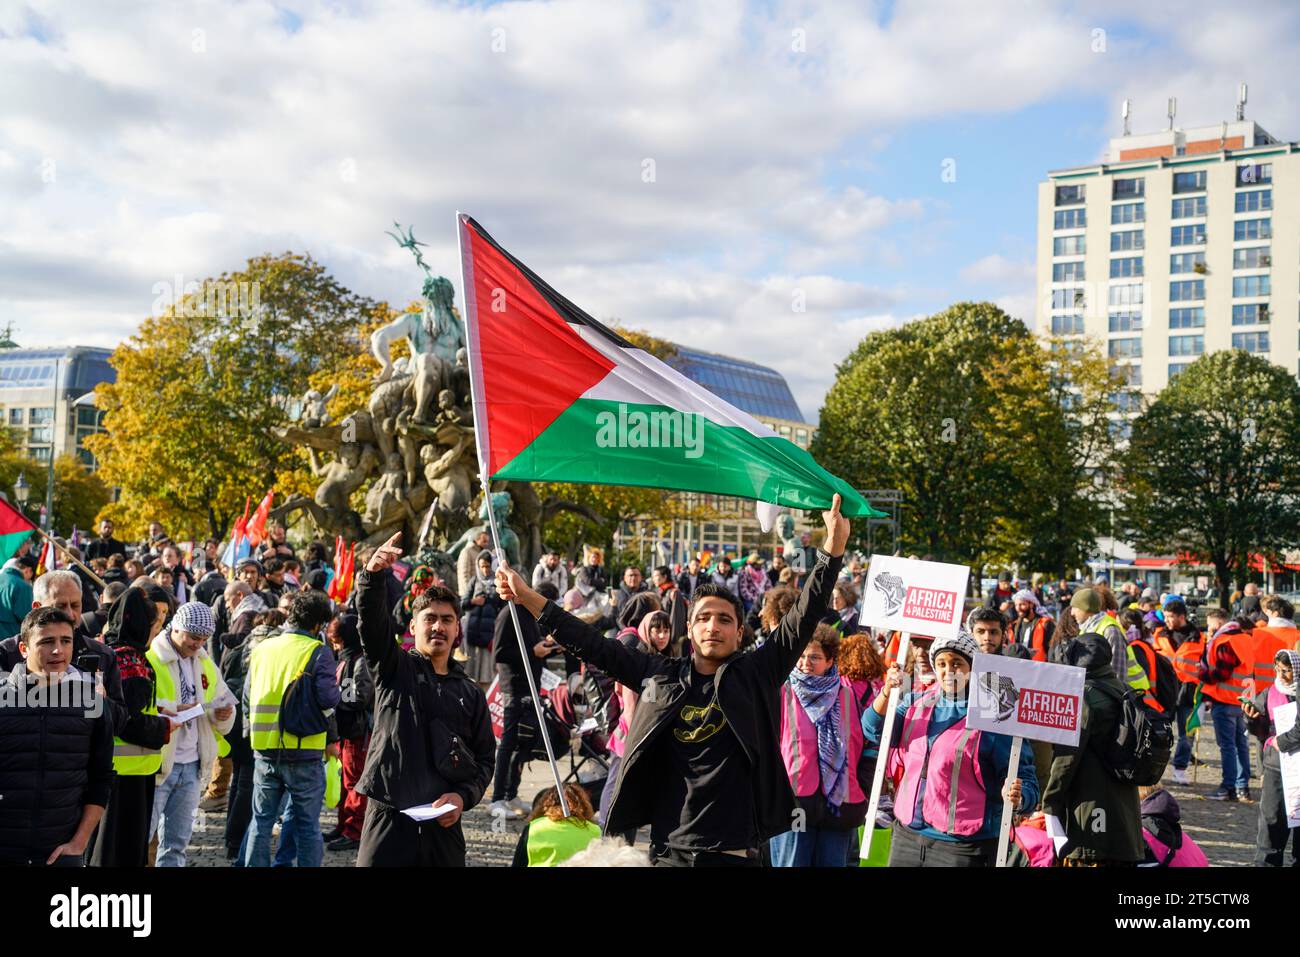 Pro-palästinensische und linksradikale Vereine demonstrieren am Neptunbrunnen beim Alexanderplatz in Berlin-Mitte. Der Demonstrationszug führte unter Stock Photo